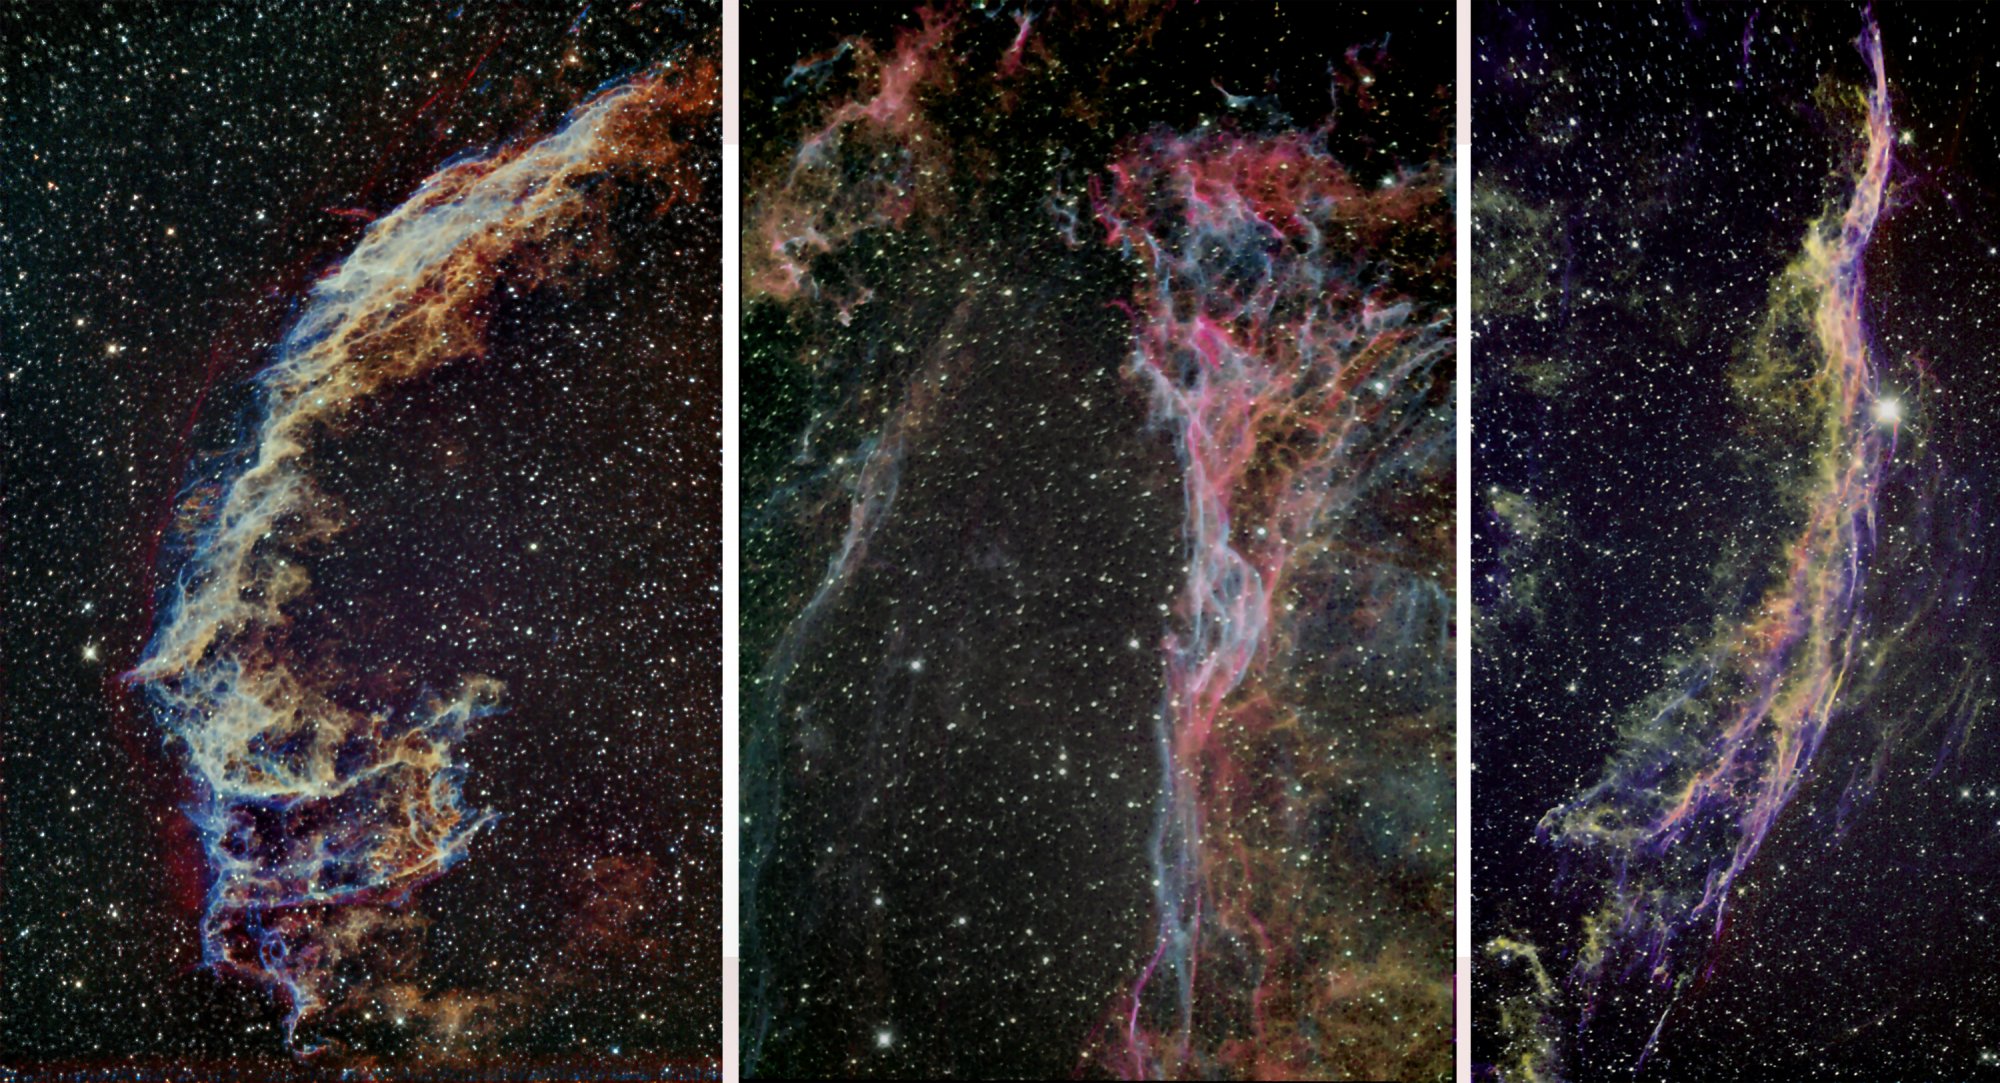 Veil Nebula, Complete